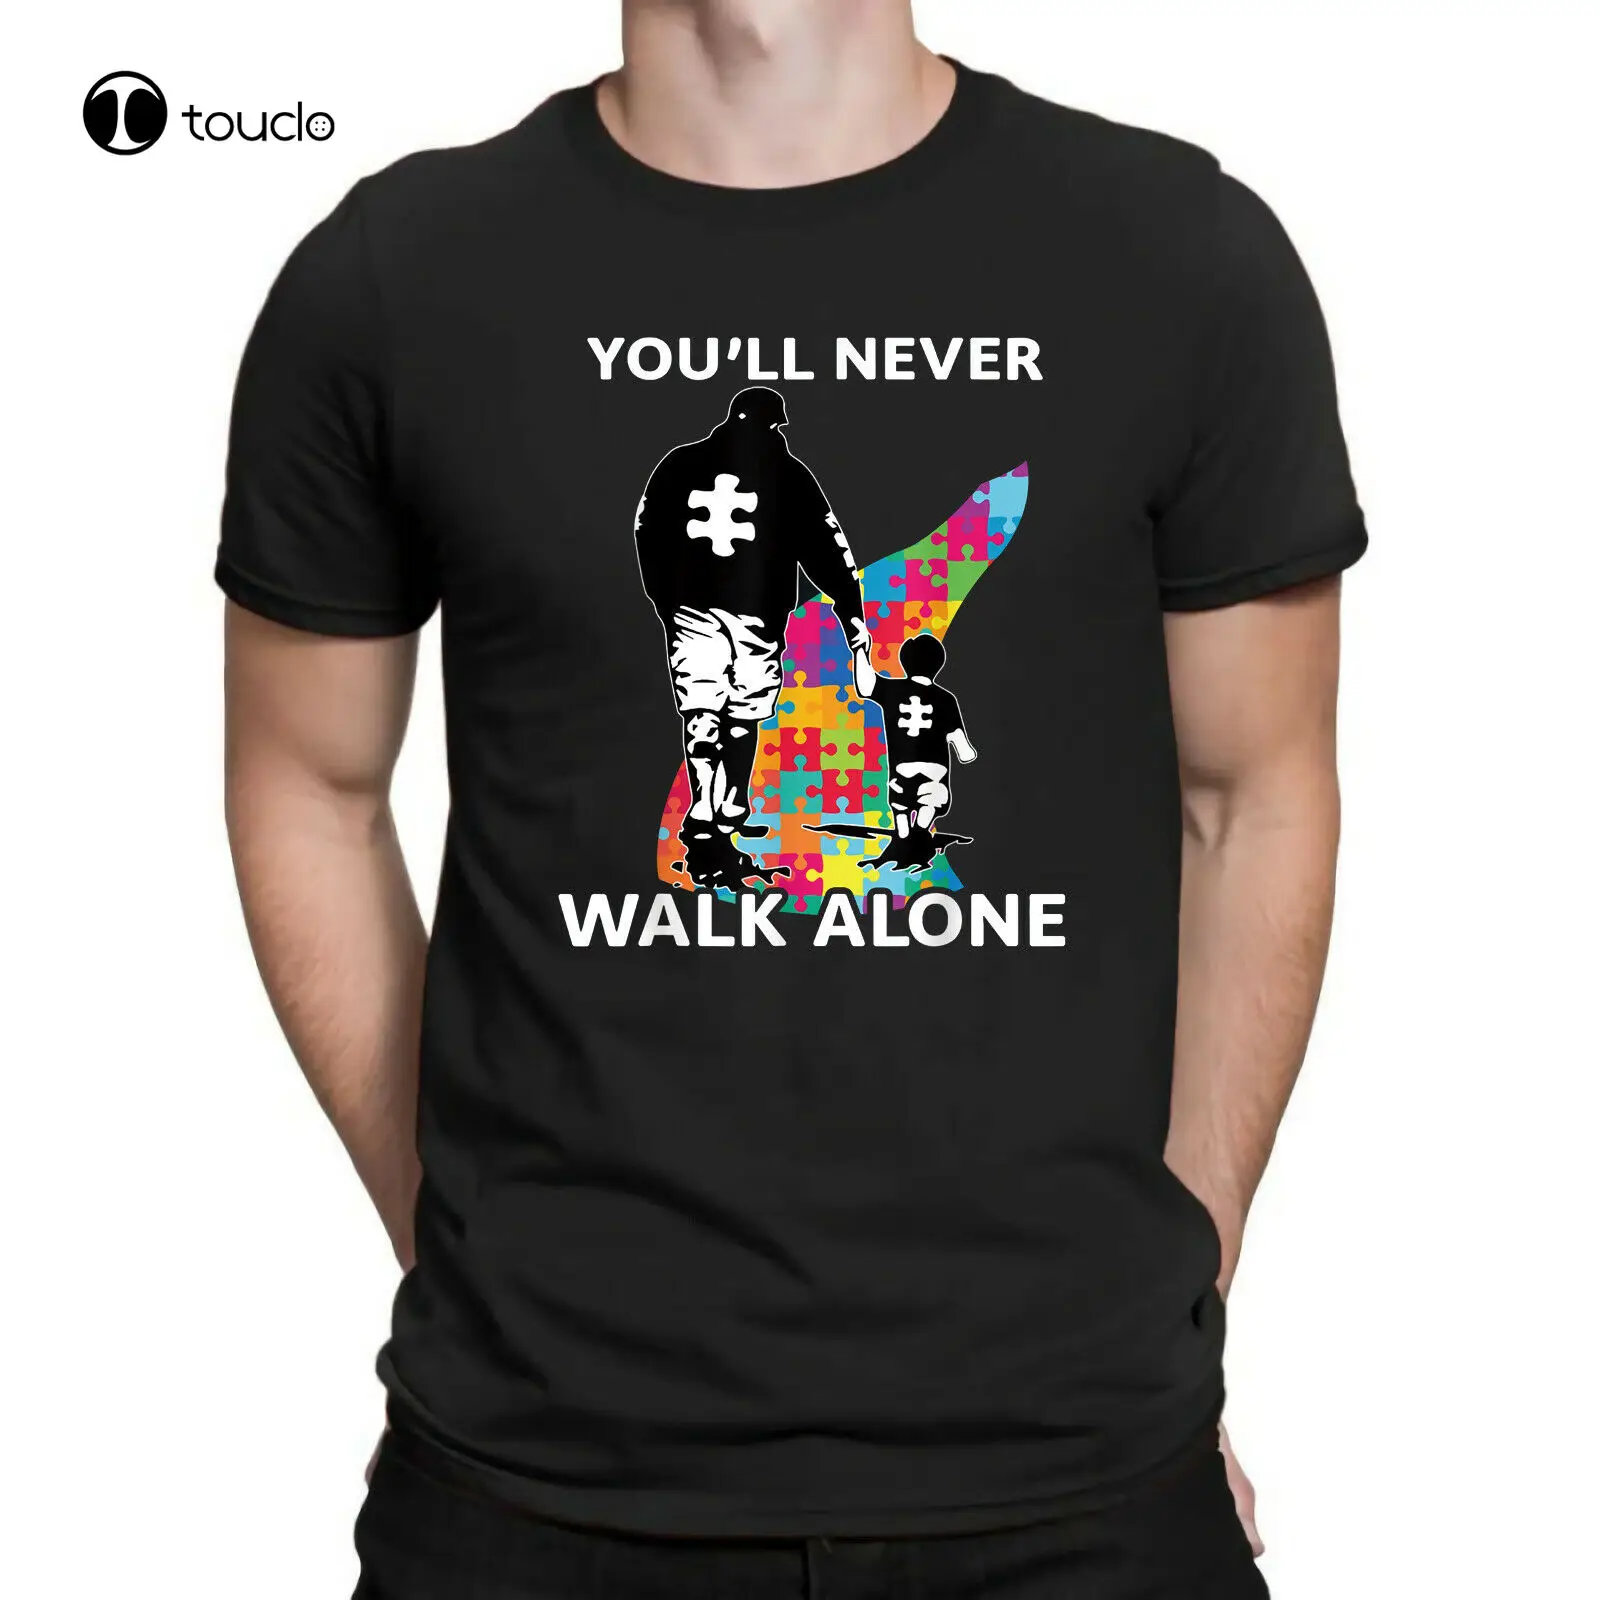 

Мужская черная футболка с принтом аутизма, папы и сына, youwill Never Walk Alone, хлопковые футболки, винтажные футболки